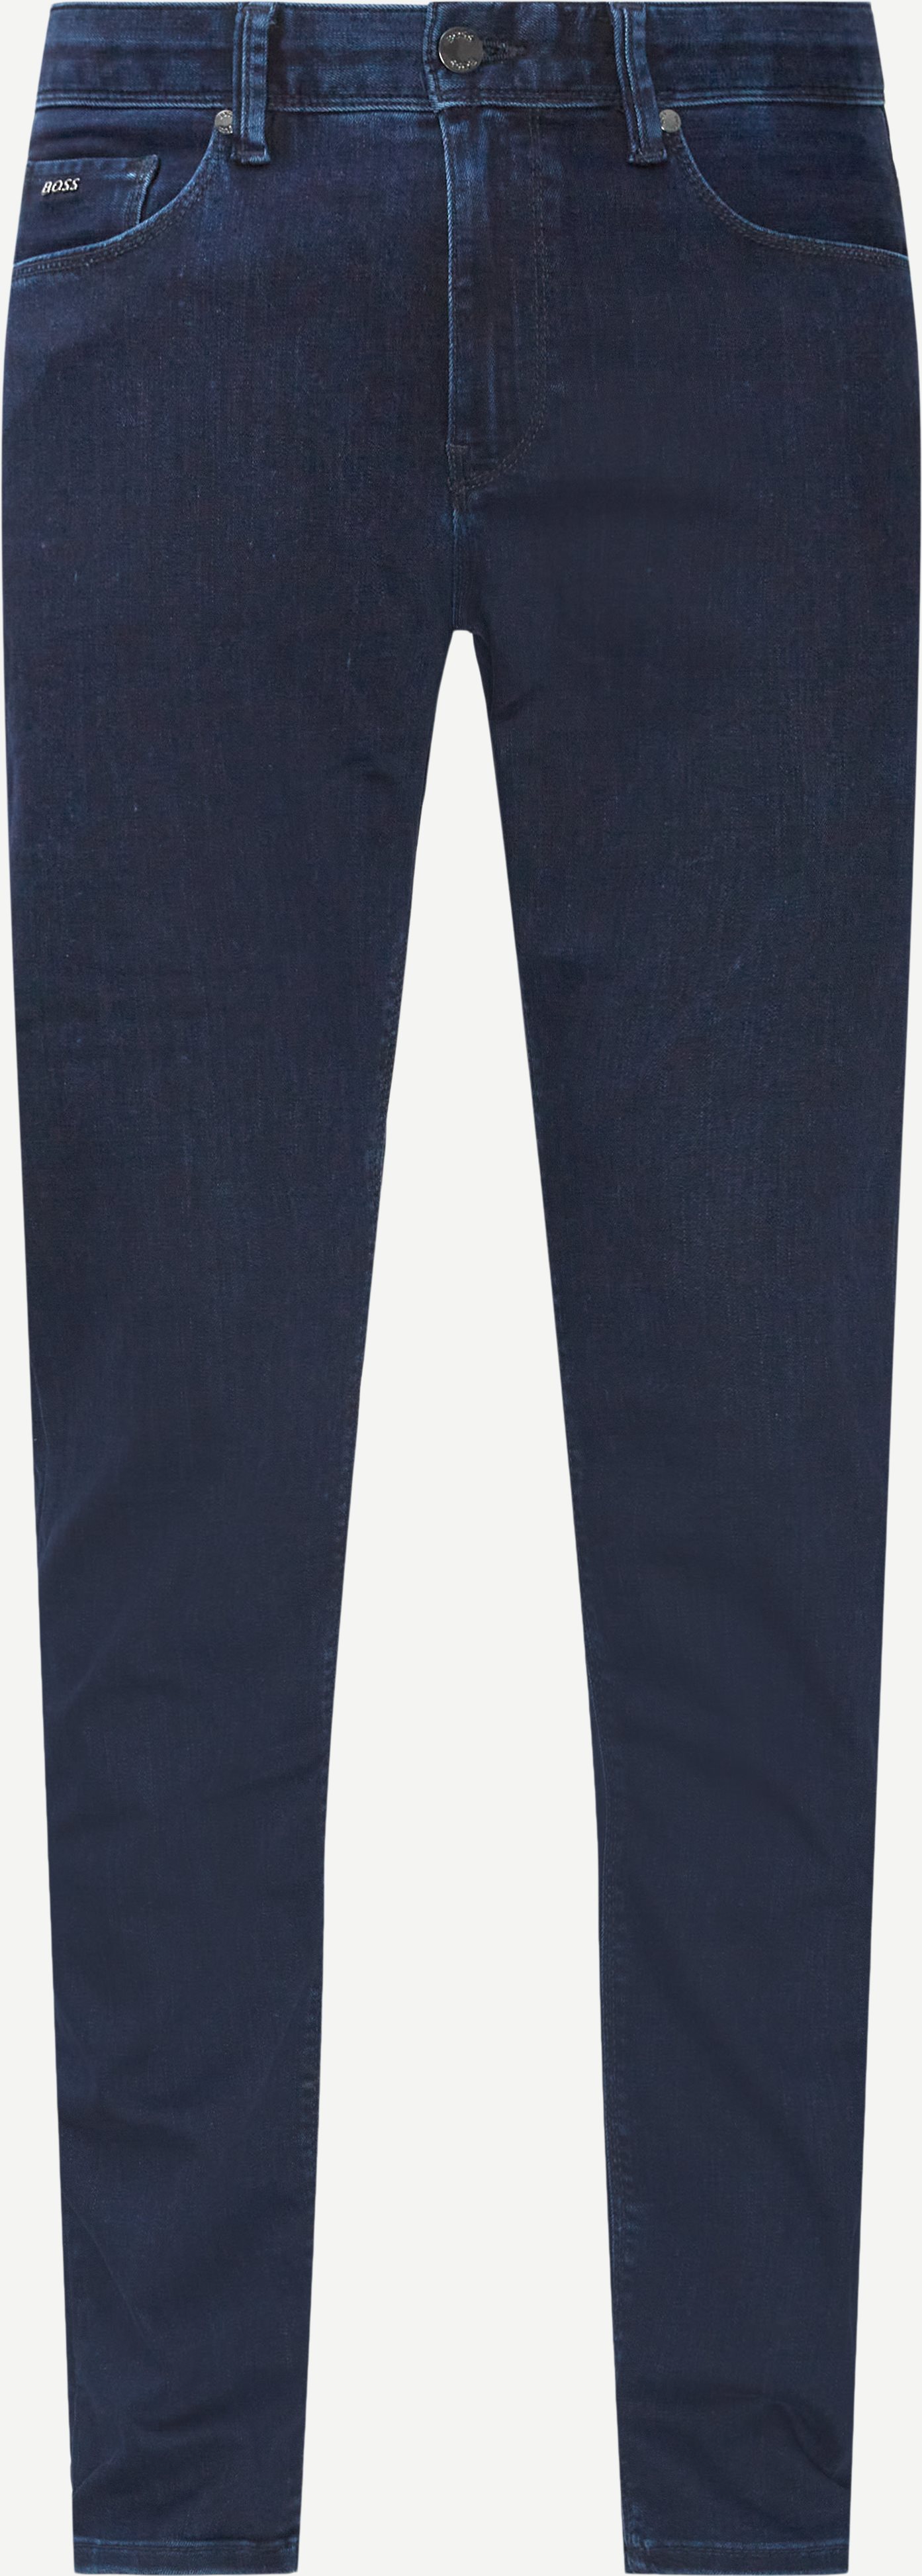 Delaware3 Jeans - Jeans - Slim fit - Blå